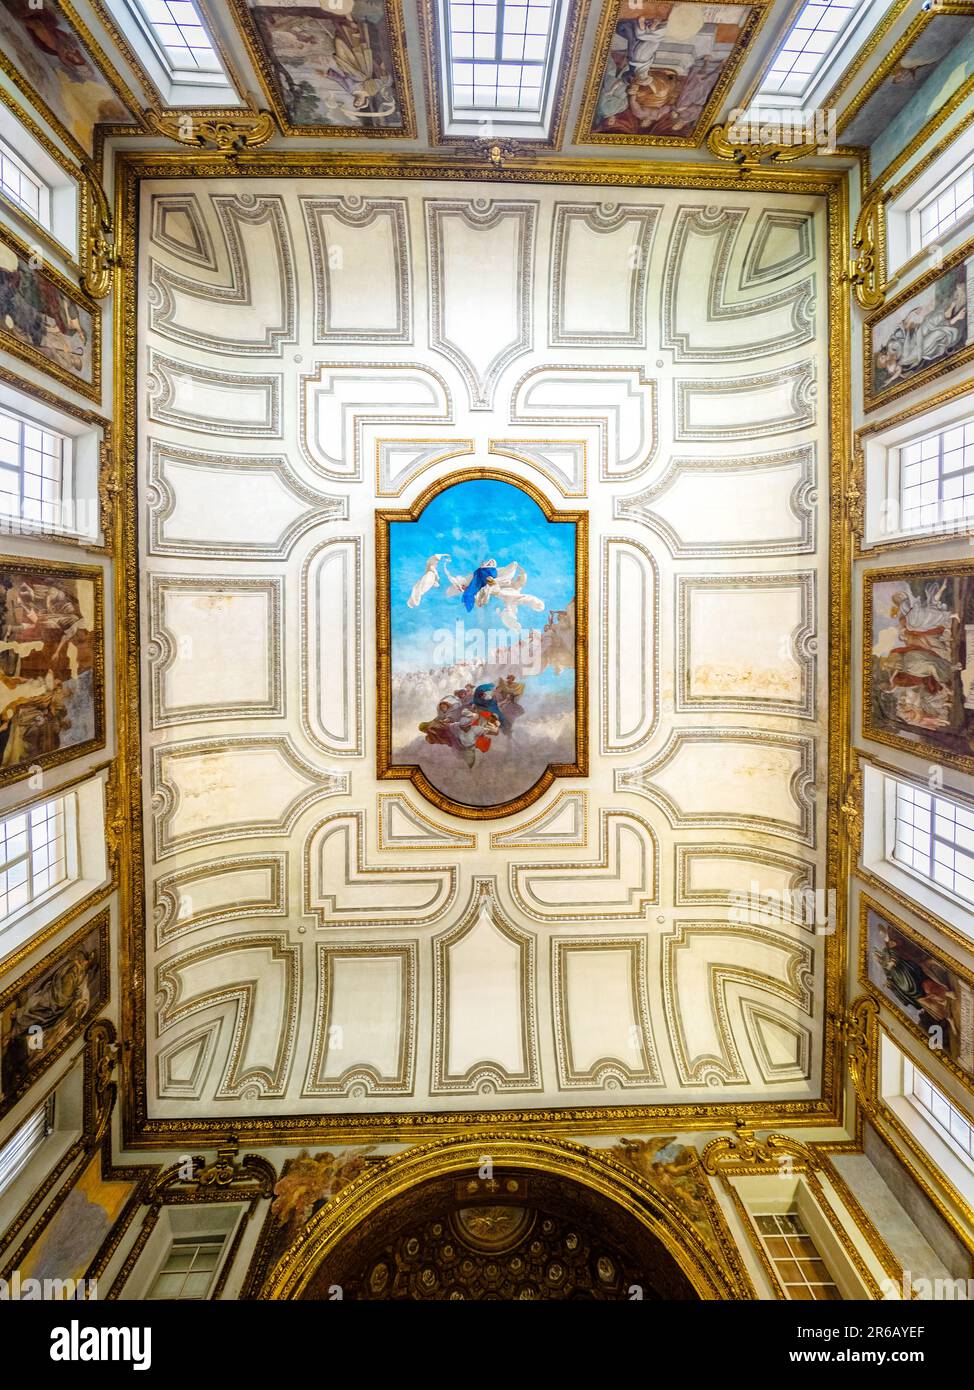 Decke der Königlichen Kapelle, gewidmet der Mariä Himmelfahrt - Königlicher Palast von Neapel, der 1734 zur königlichen Residenz der Bourbonen wurde - Neapel, Italien Stockfoto